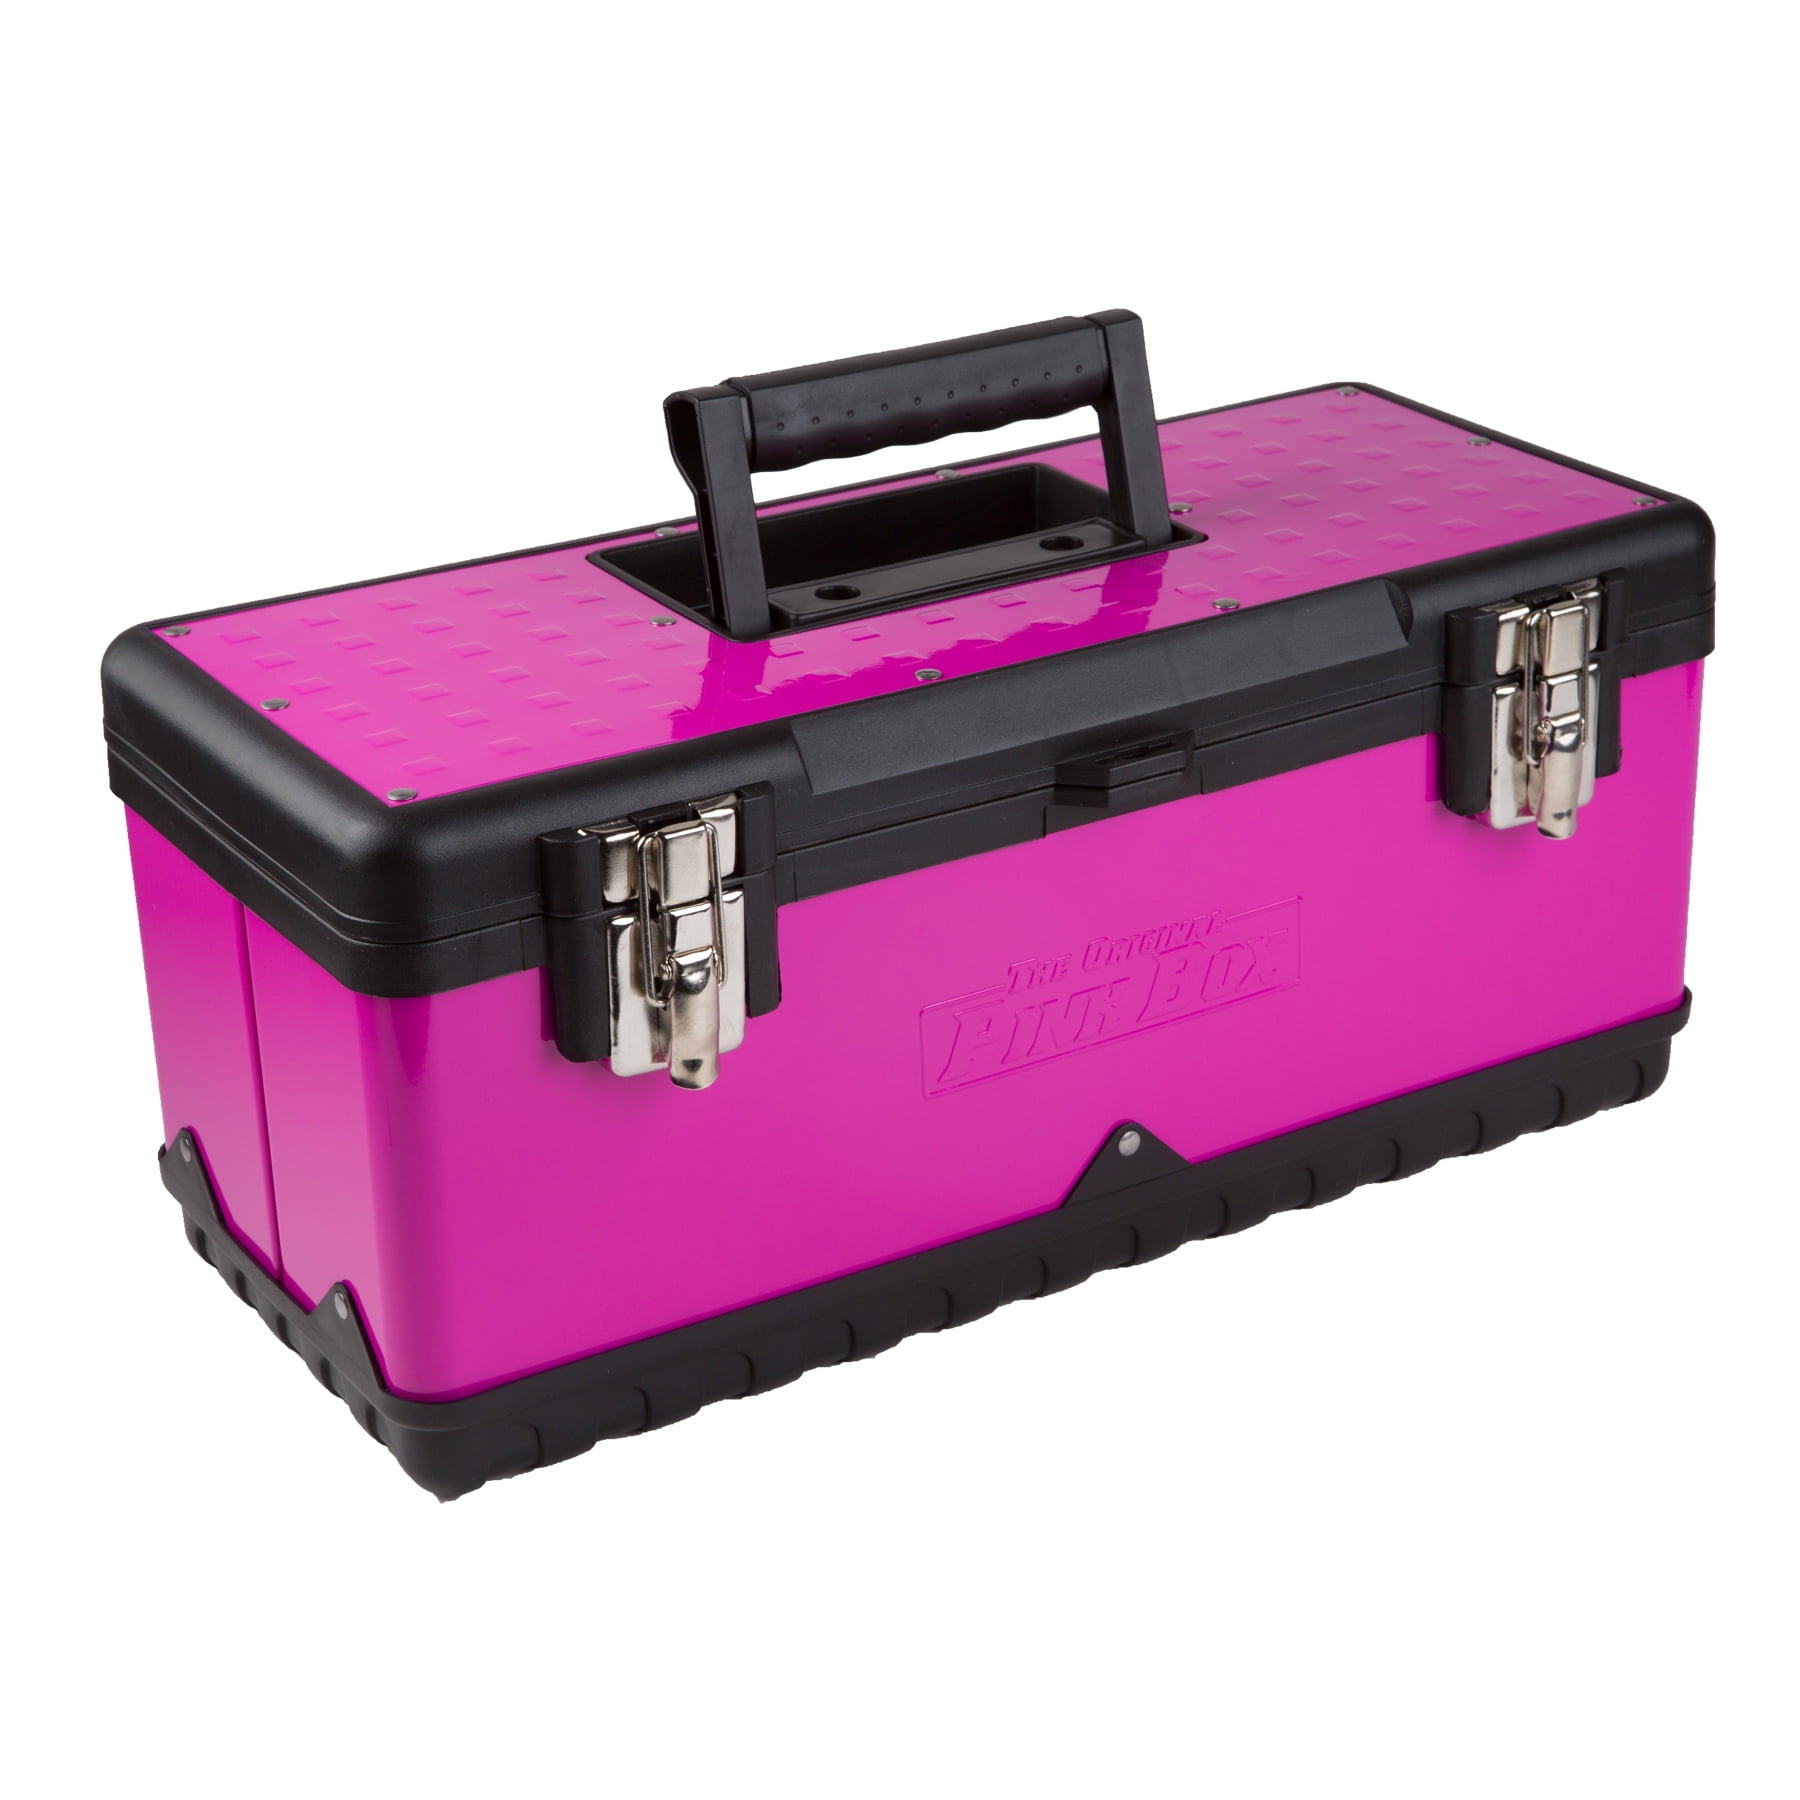 The Original Pink Box Pb14mt 14-in-1 Multi-Tool, Pink